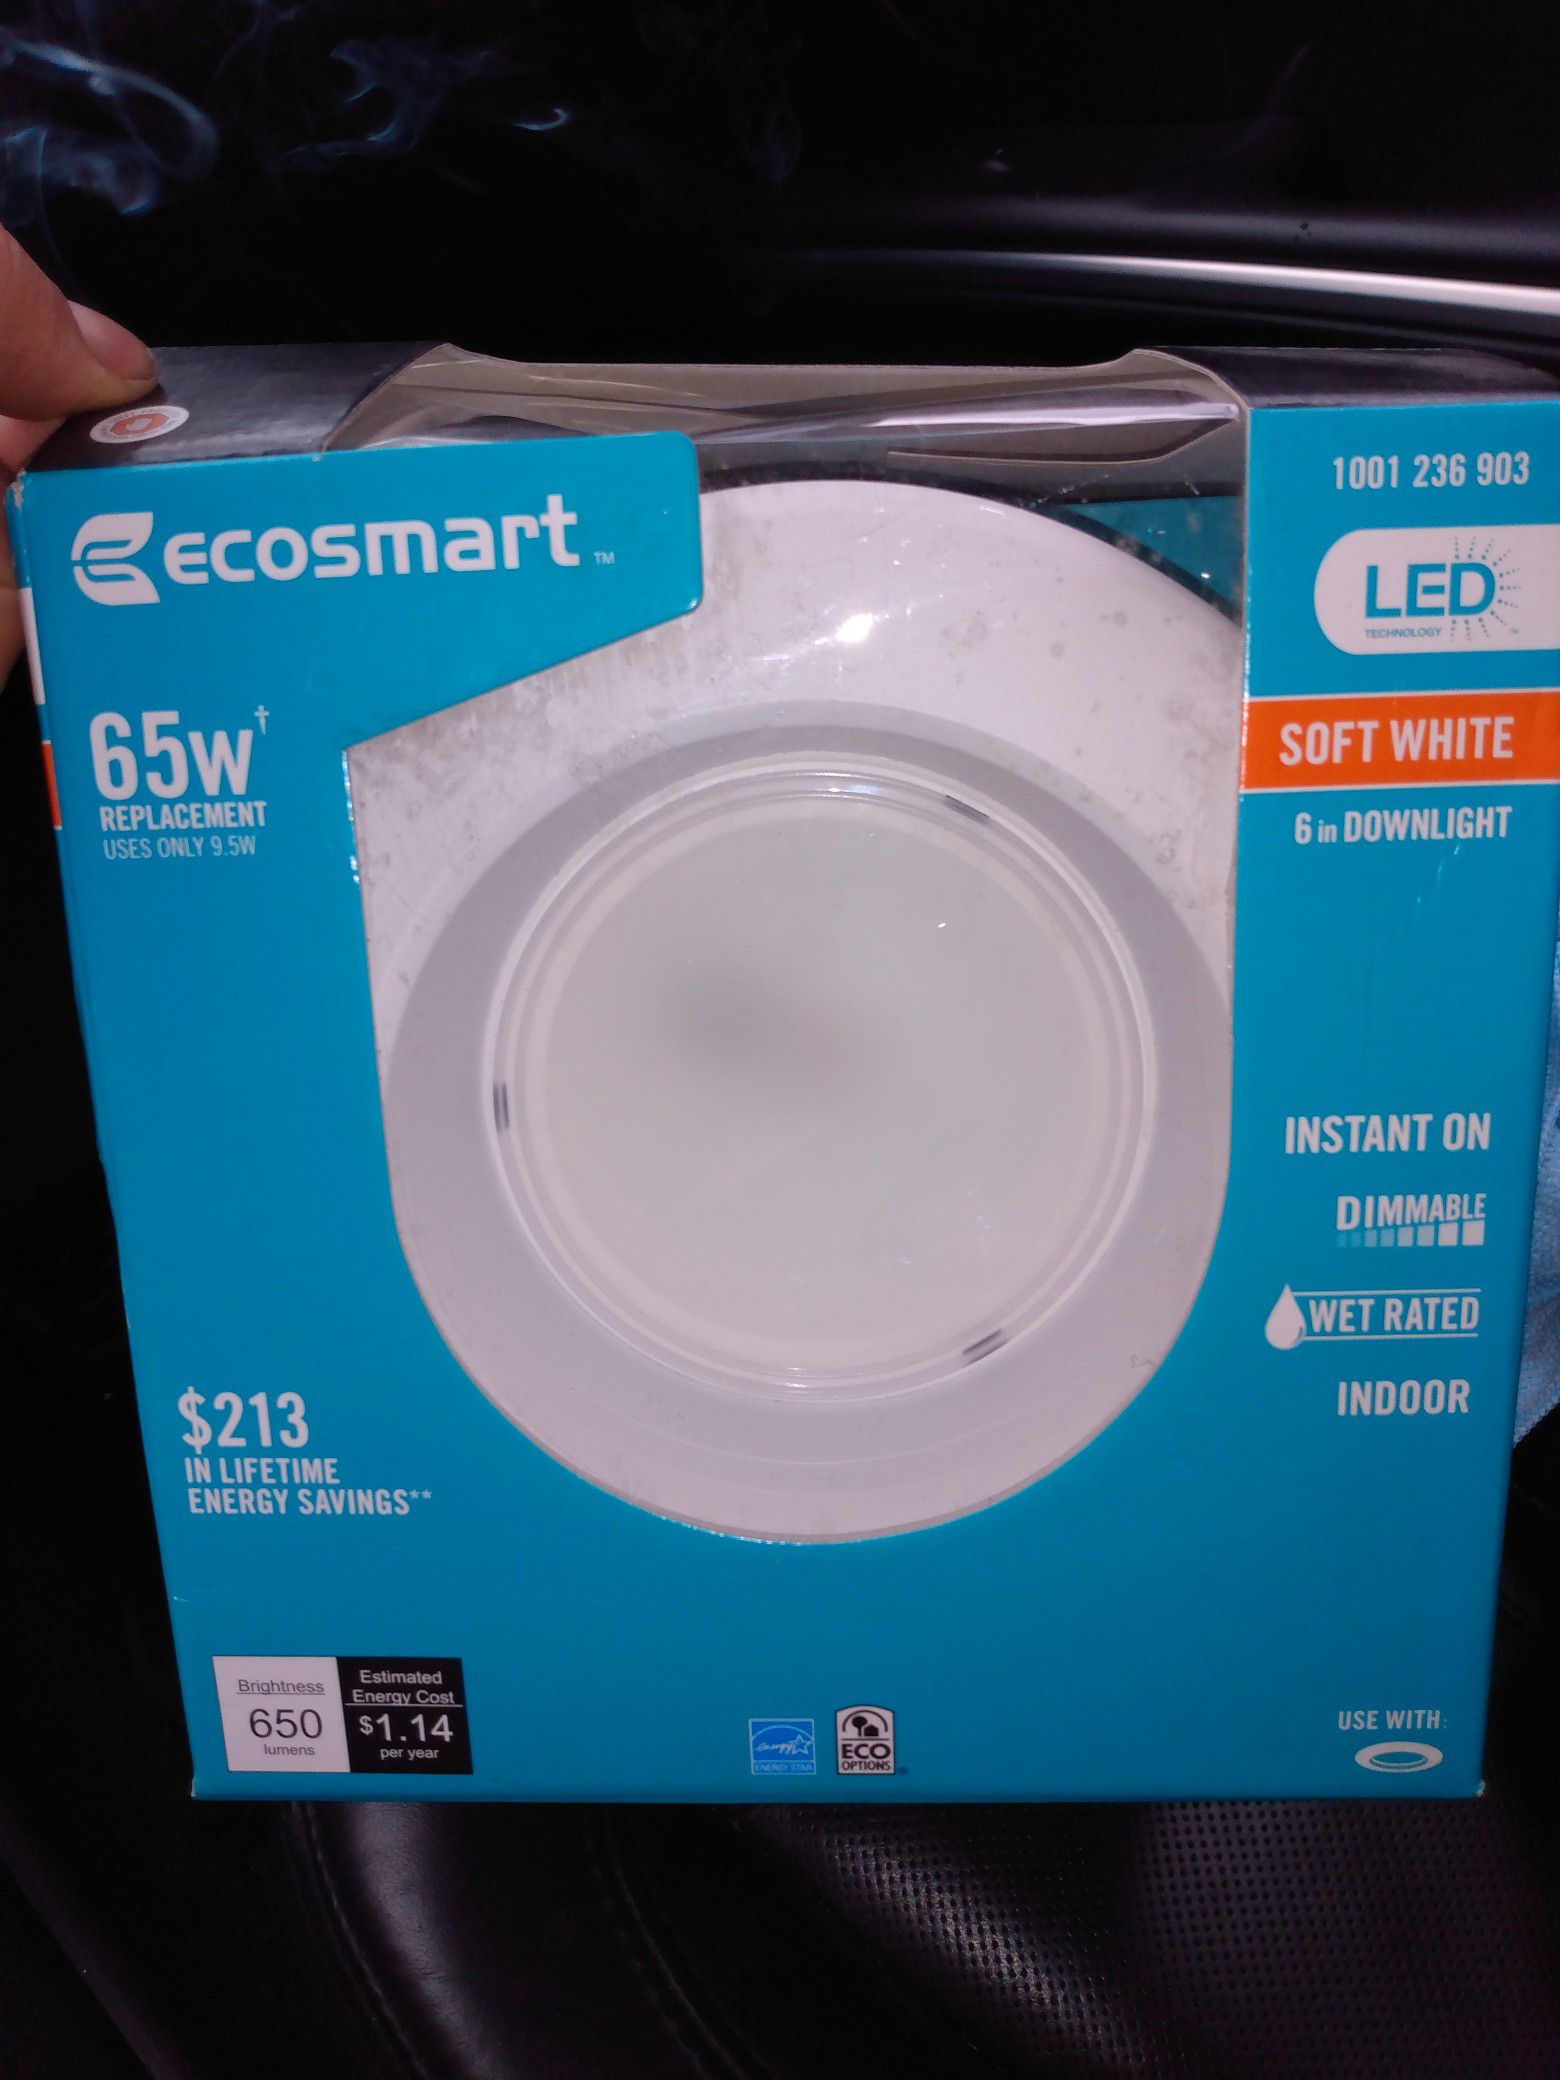 5 brand new ecosmart LED